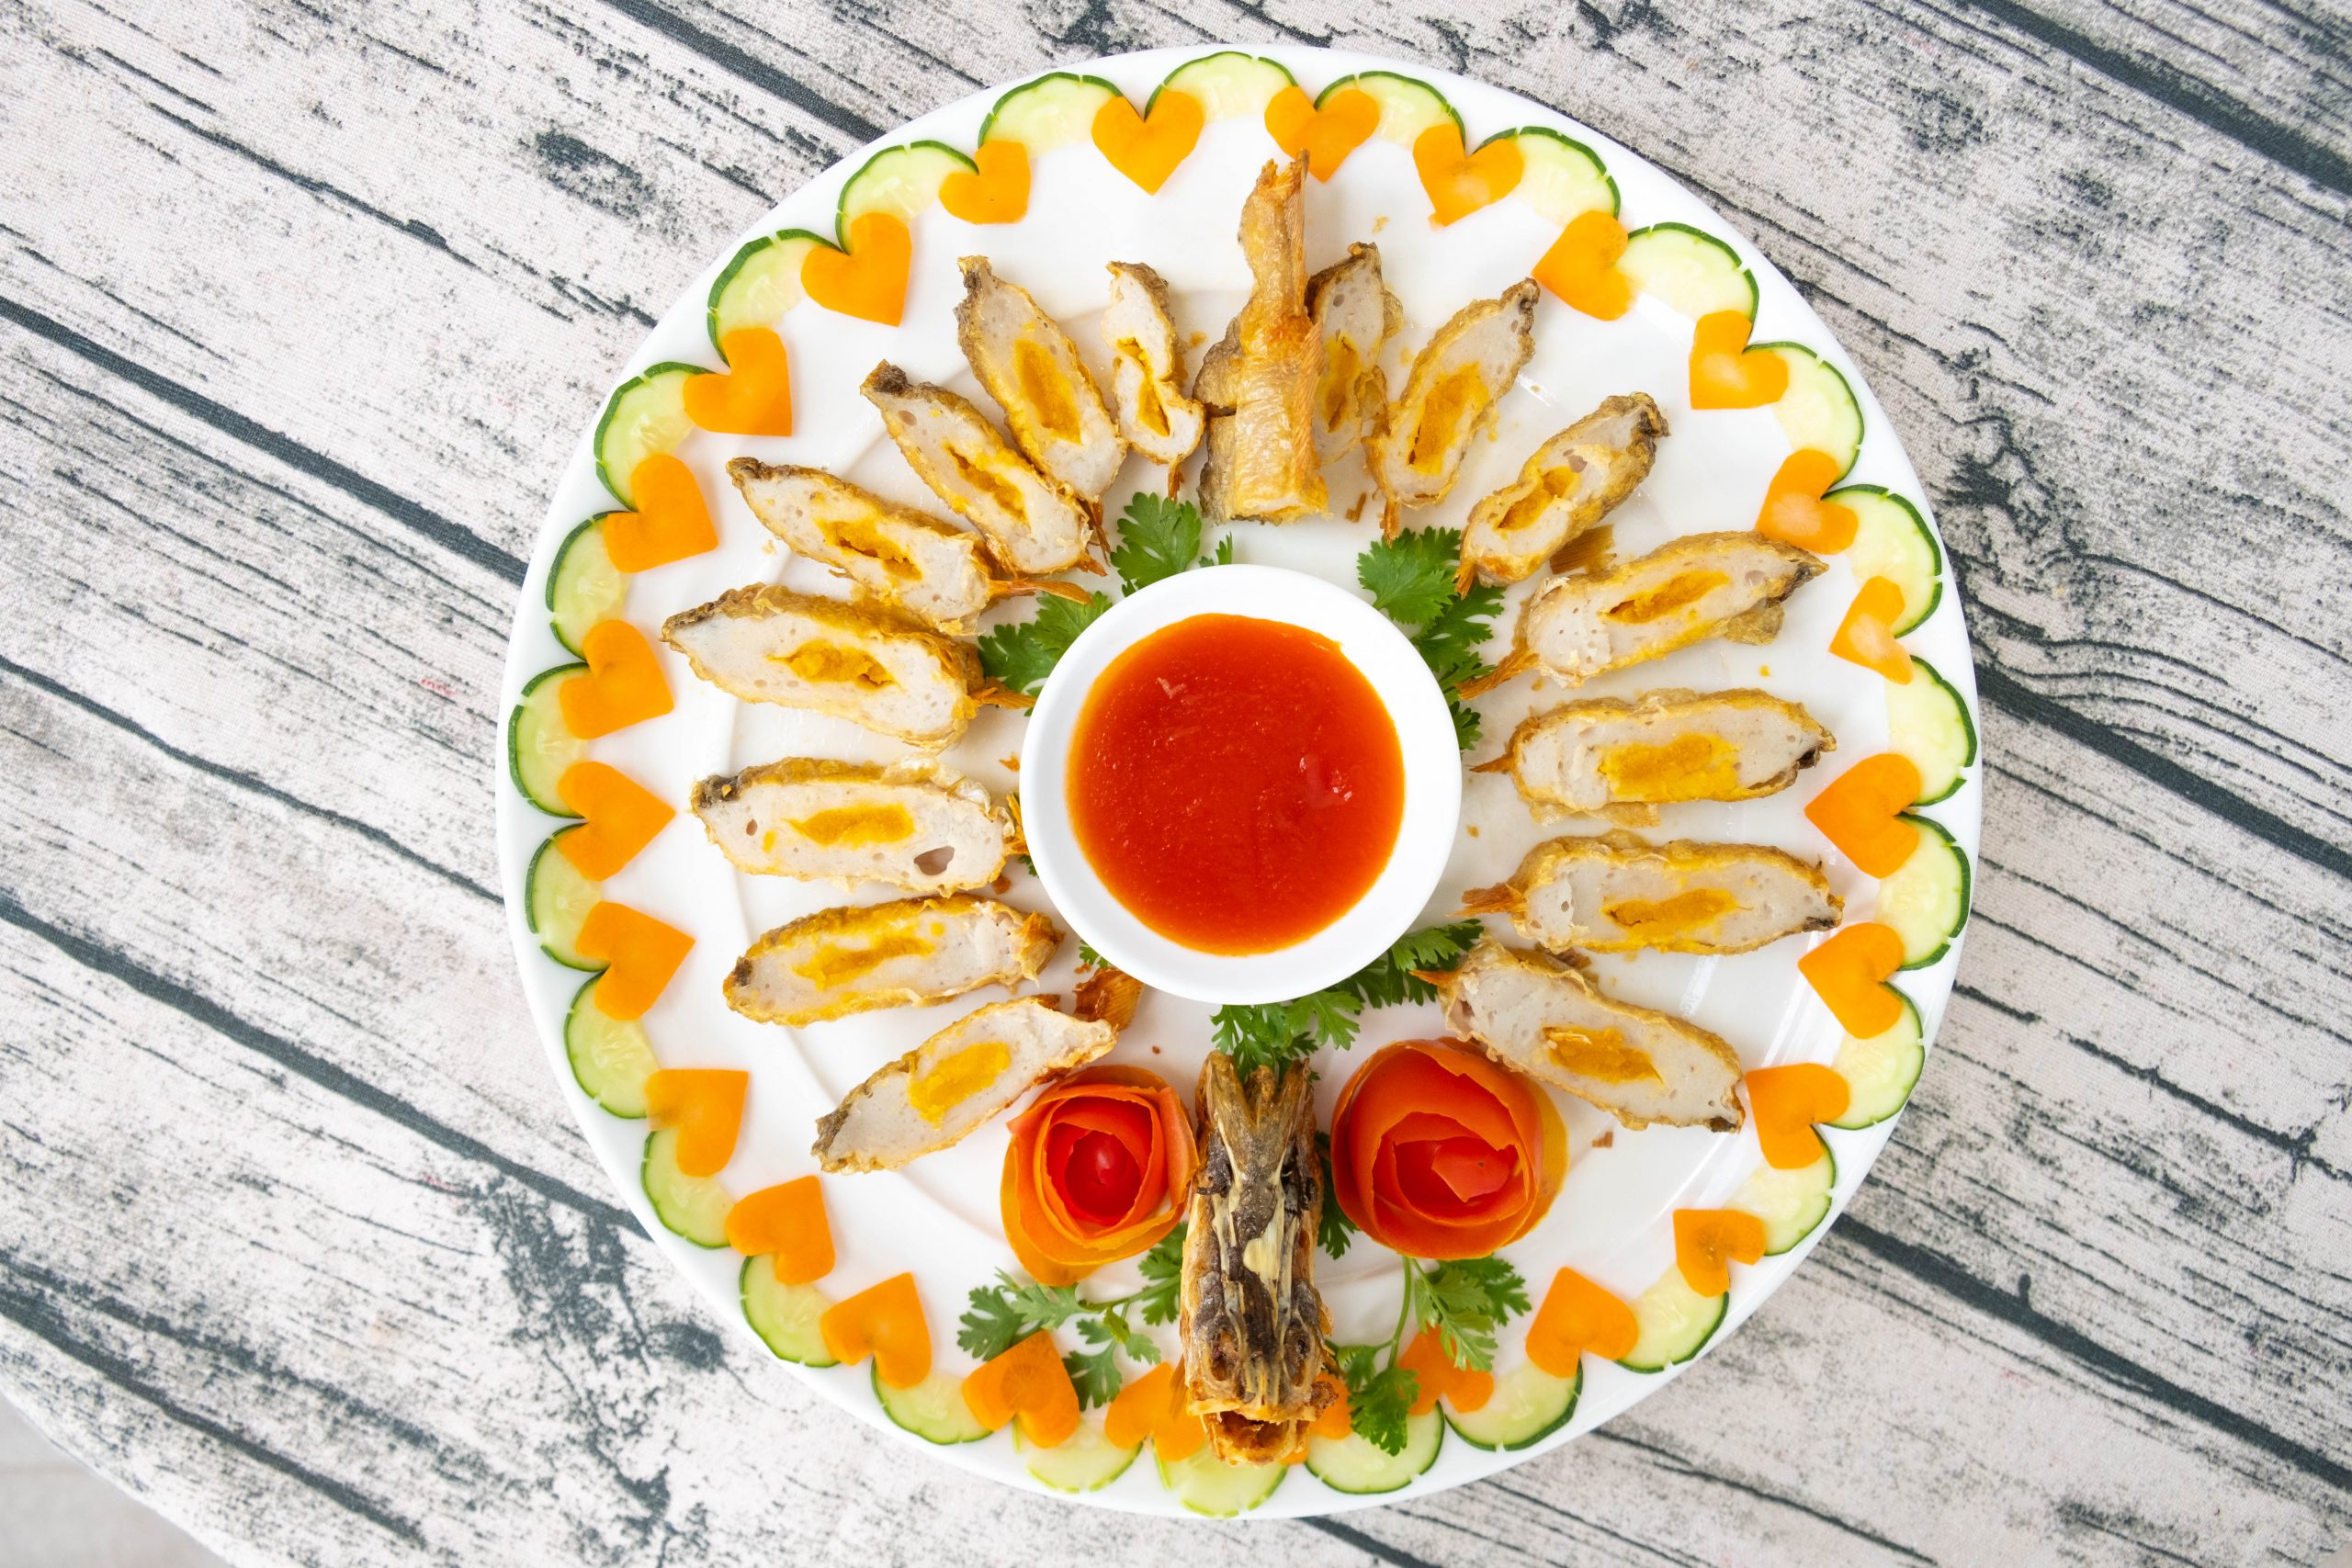 Pham Nghia Food đa dạng dòng sản phẩm từ đặc sản cá thát lát